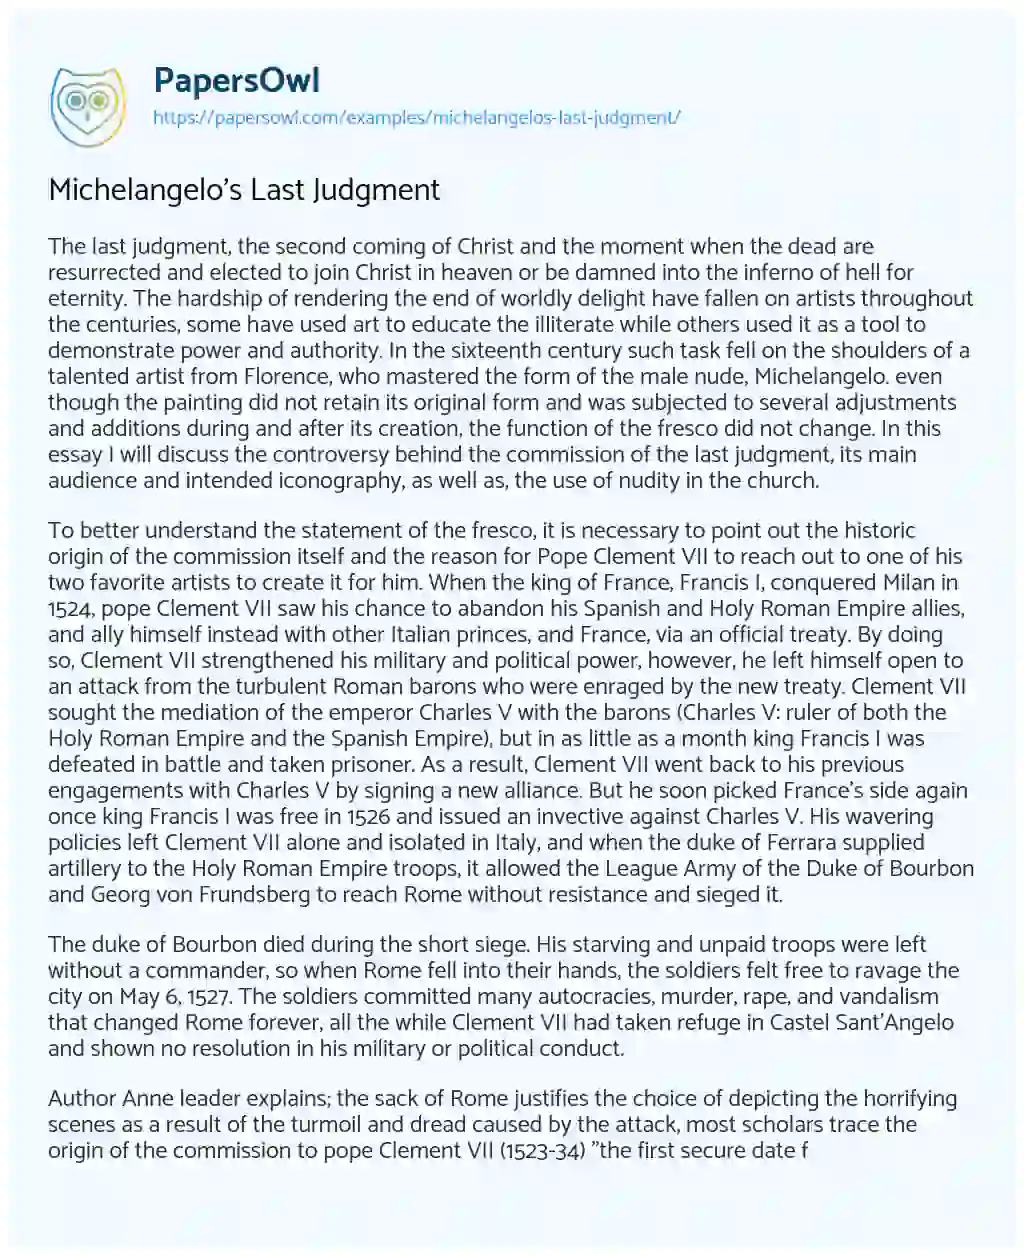 Michelangelo’s Last Judgment essay